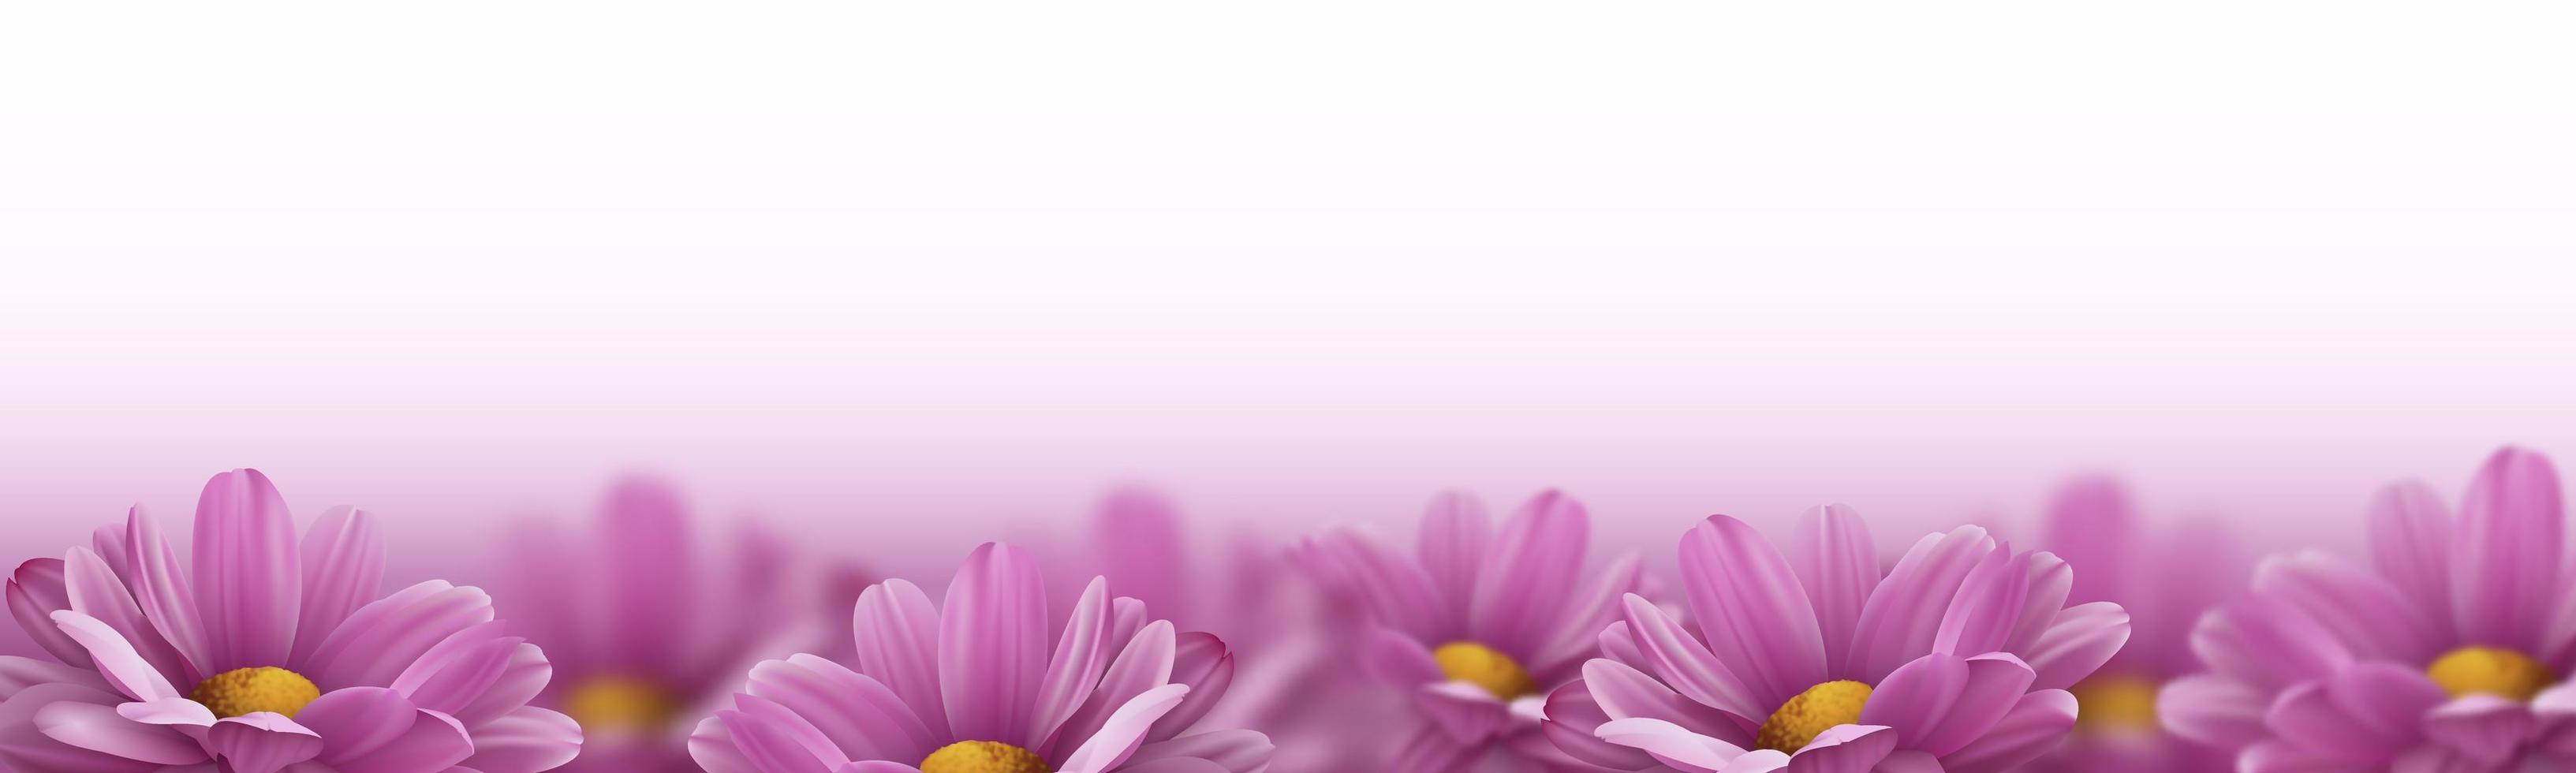 realistische rosafarbene 3d-chrysanthemenblumen auf weißem hintergrund. Vektor-Illustration vektor